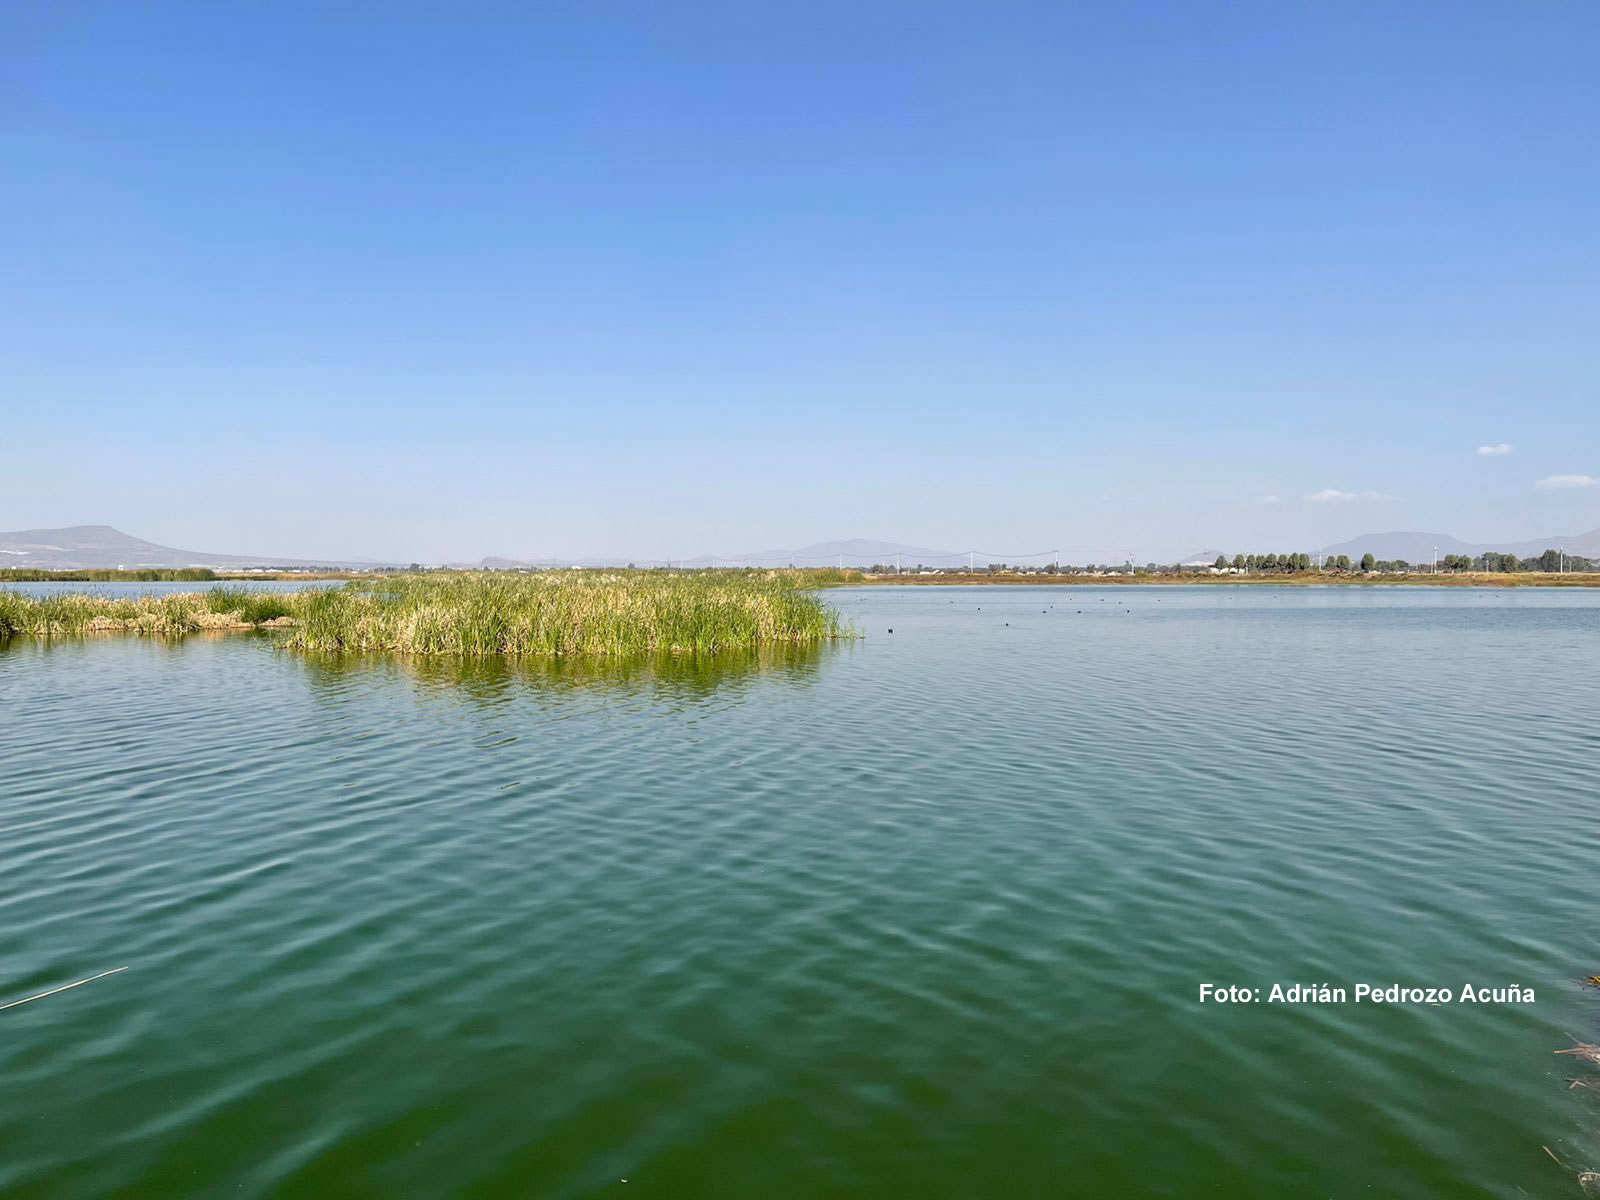 Día mundial de los humedales: recuperación hidrológica y social del lago de Texcoco